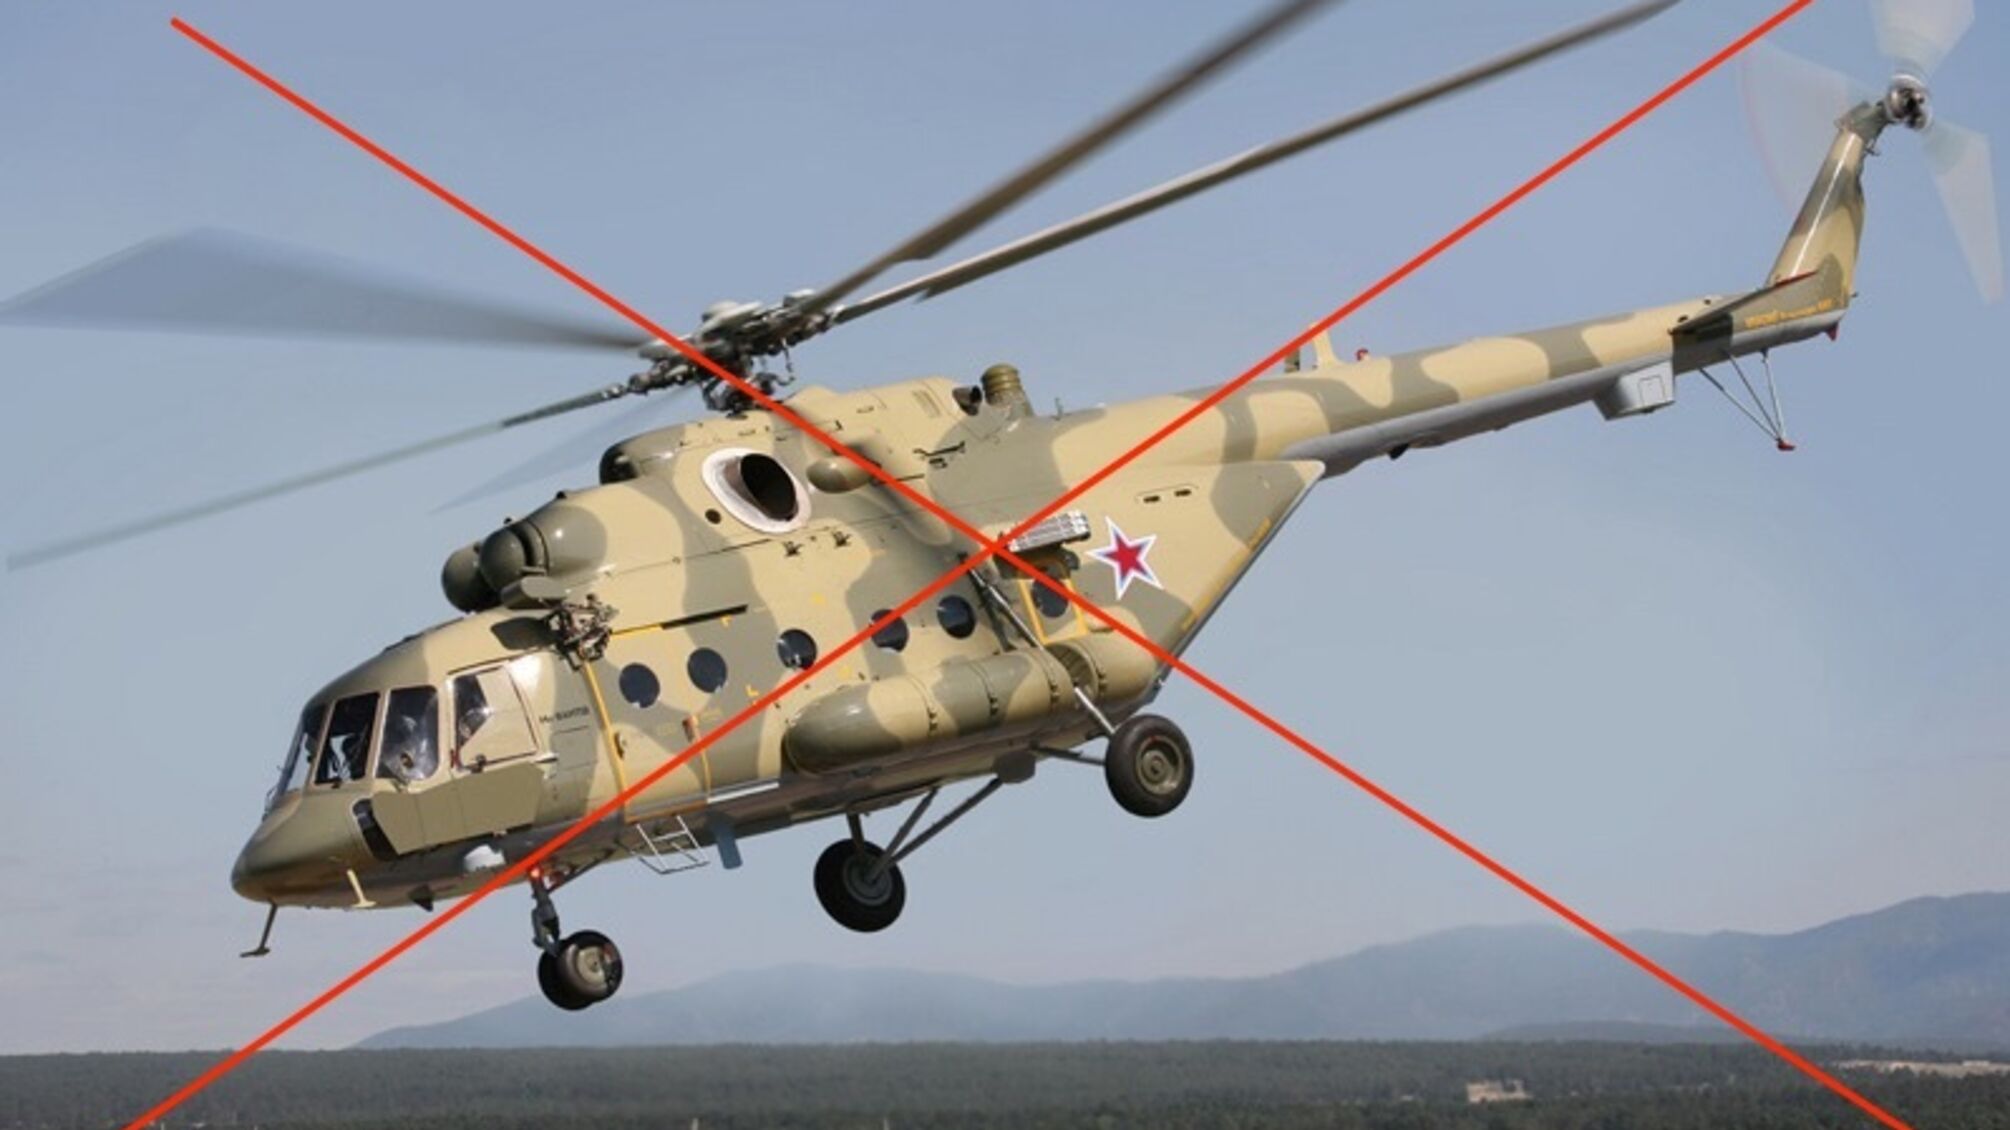 Второй раз за последние дни: в россии упал вертолет Ми-8 во время посадки